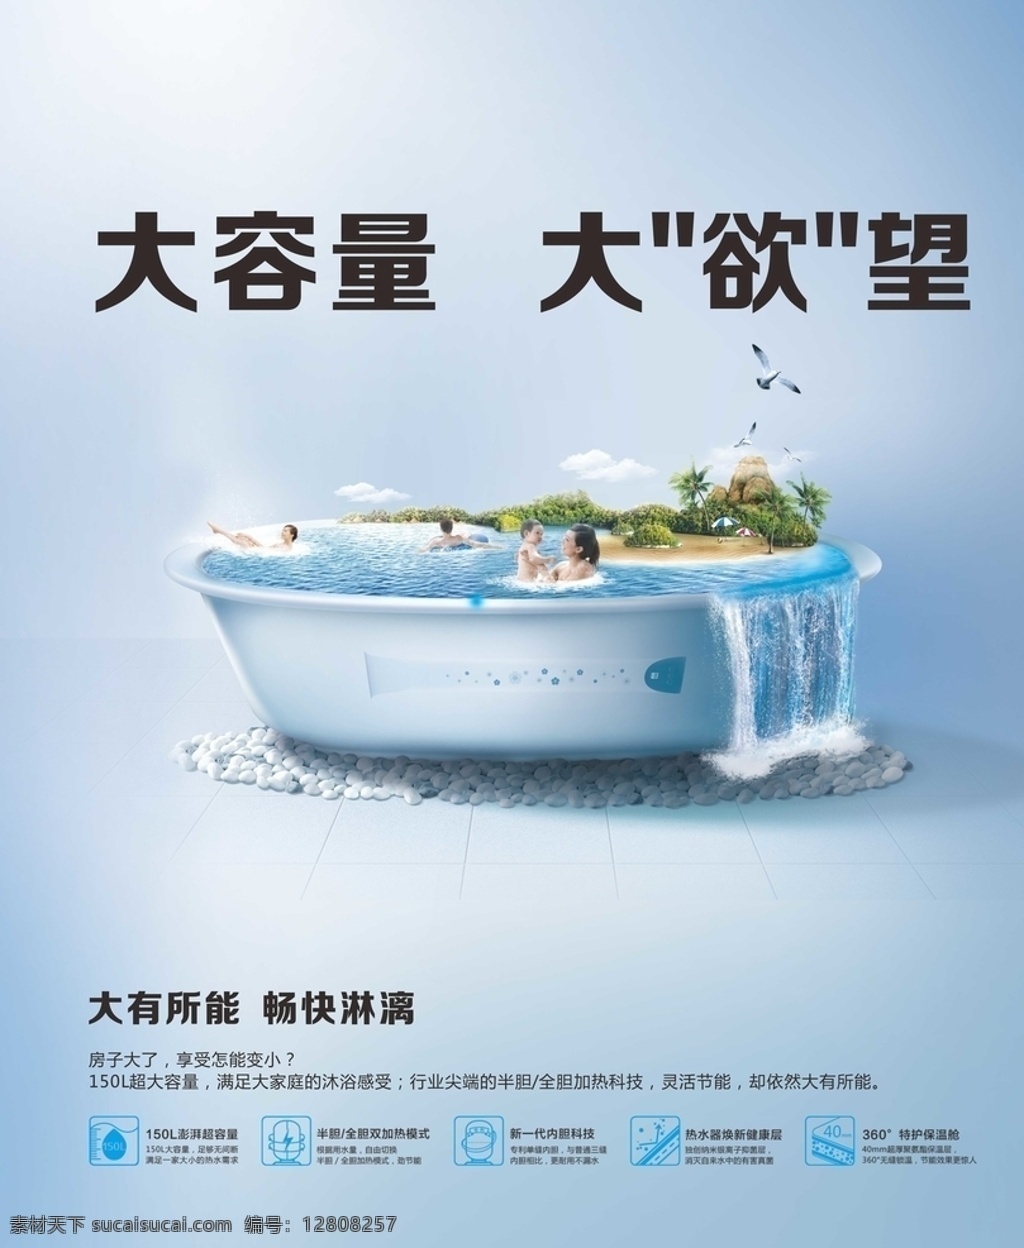 卫浴广告 卫浴 广告 大容量 浴缸